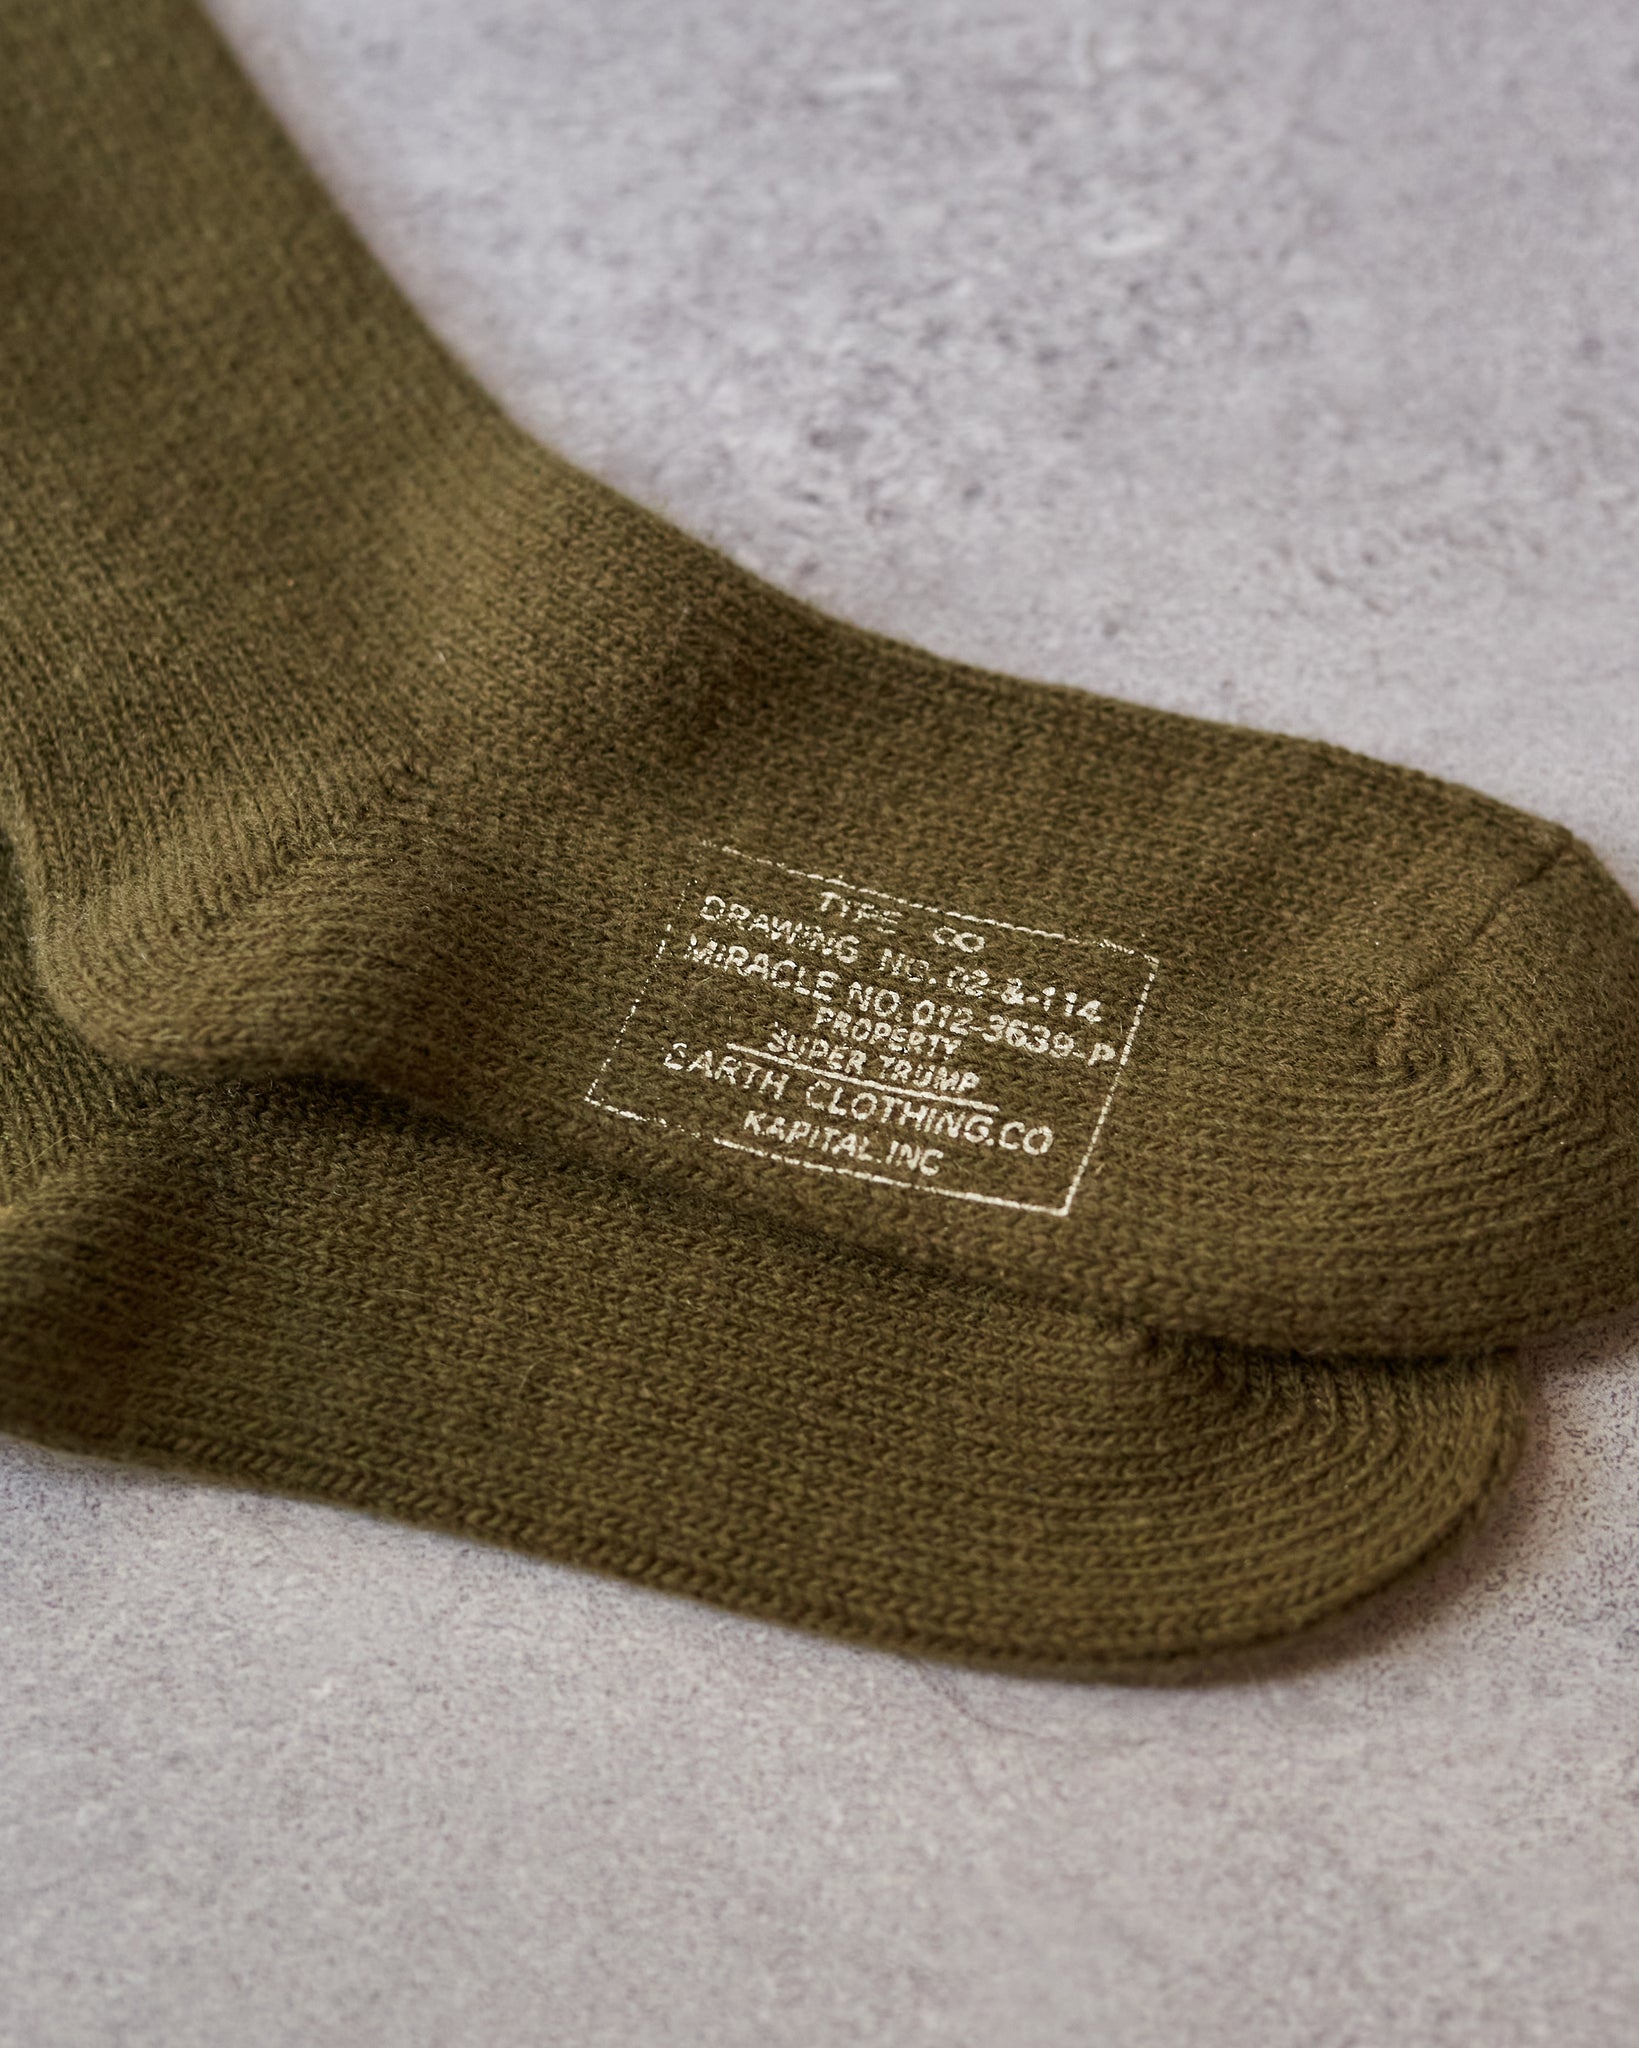 Kapital 56 Yarns Wool Military Socks, Khaki